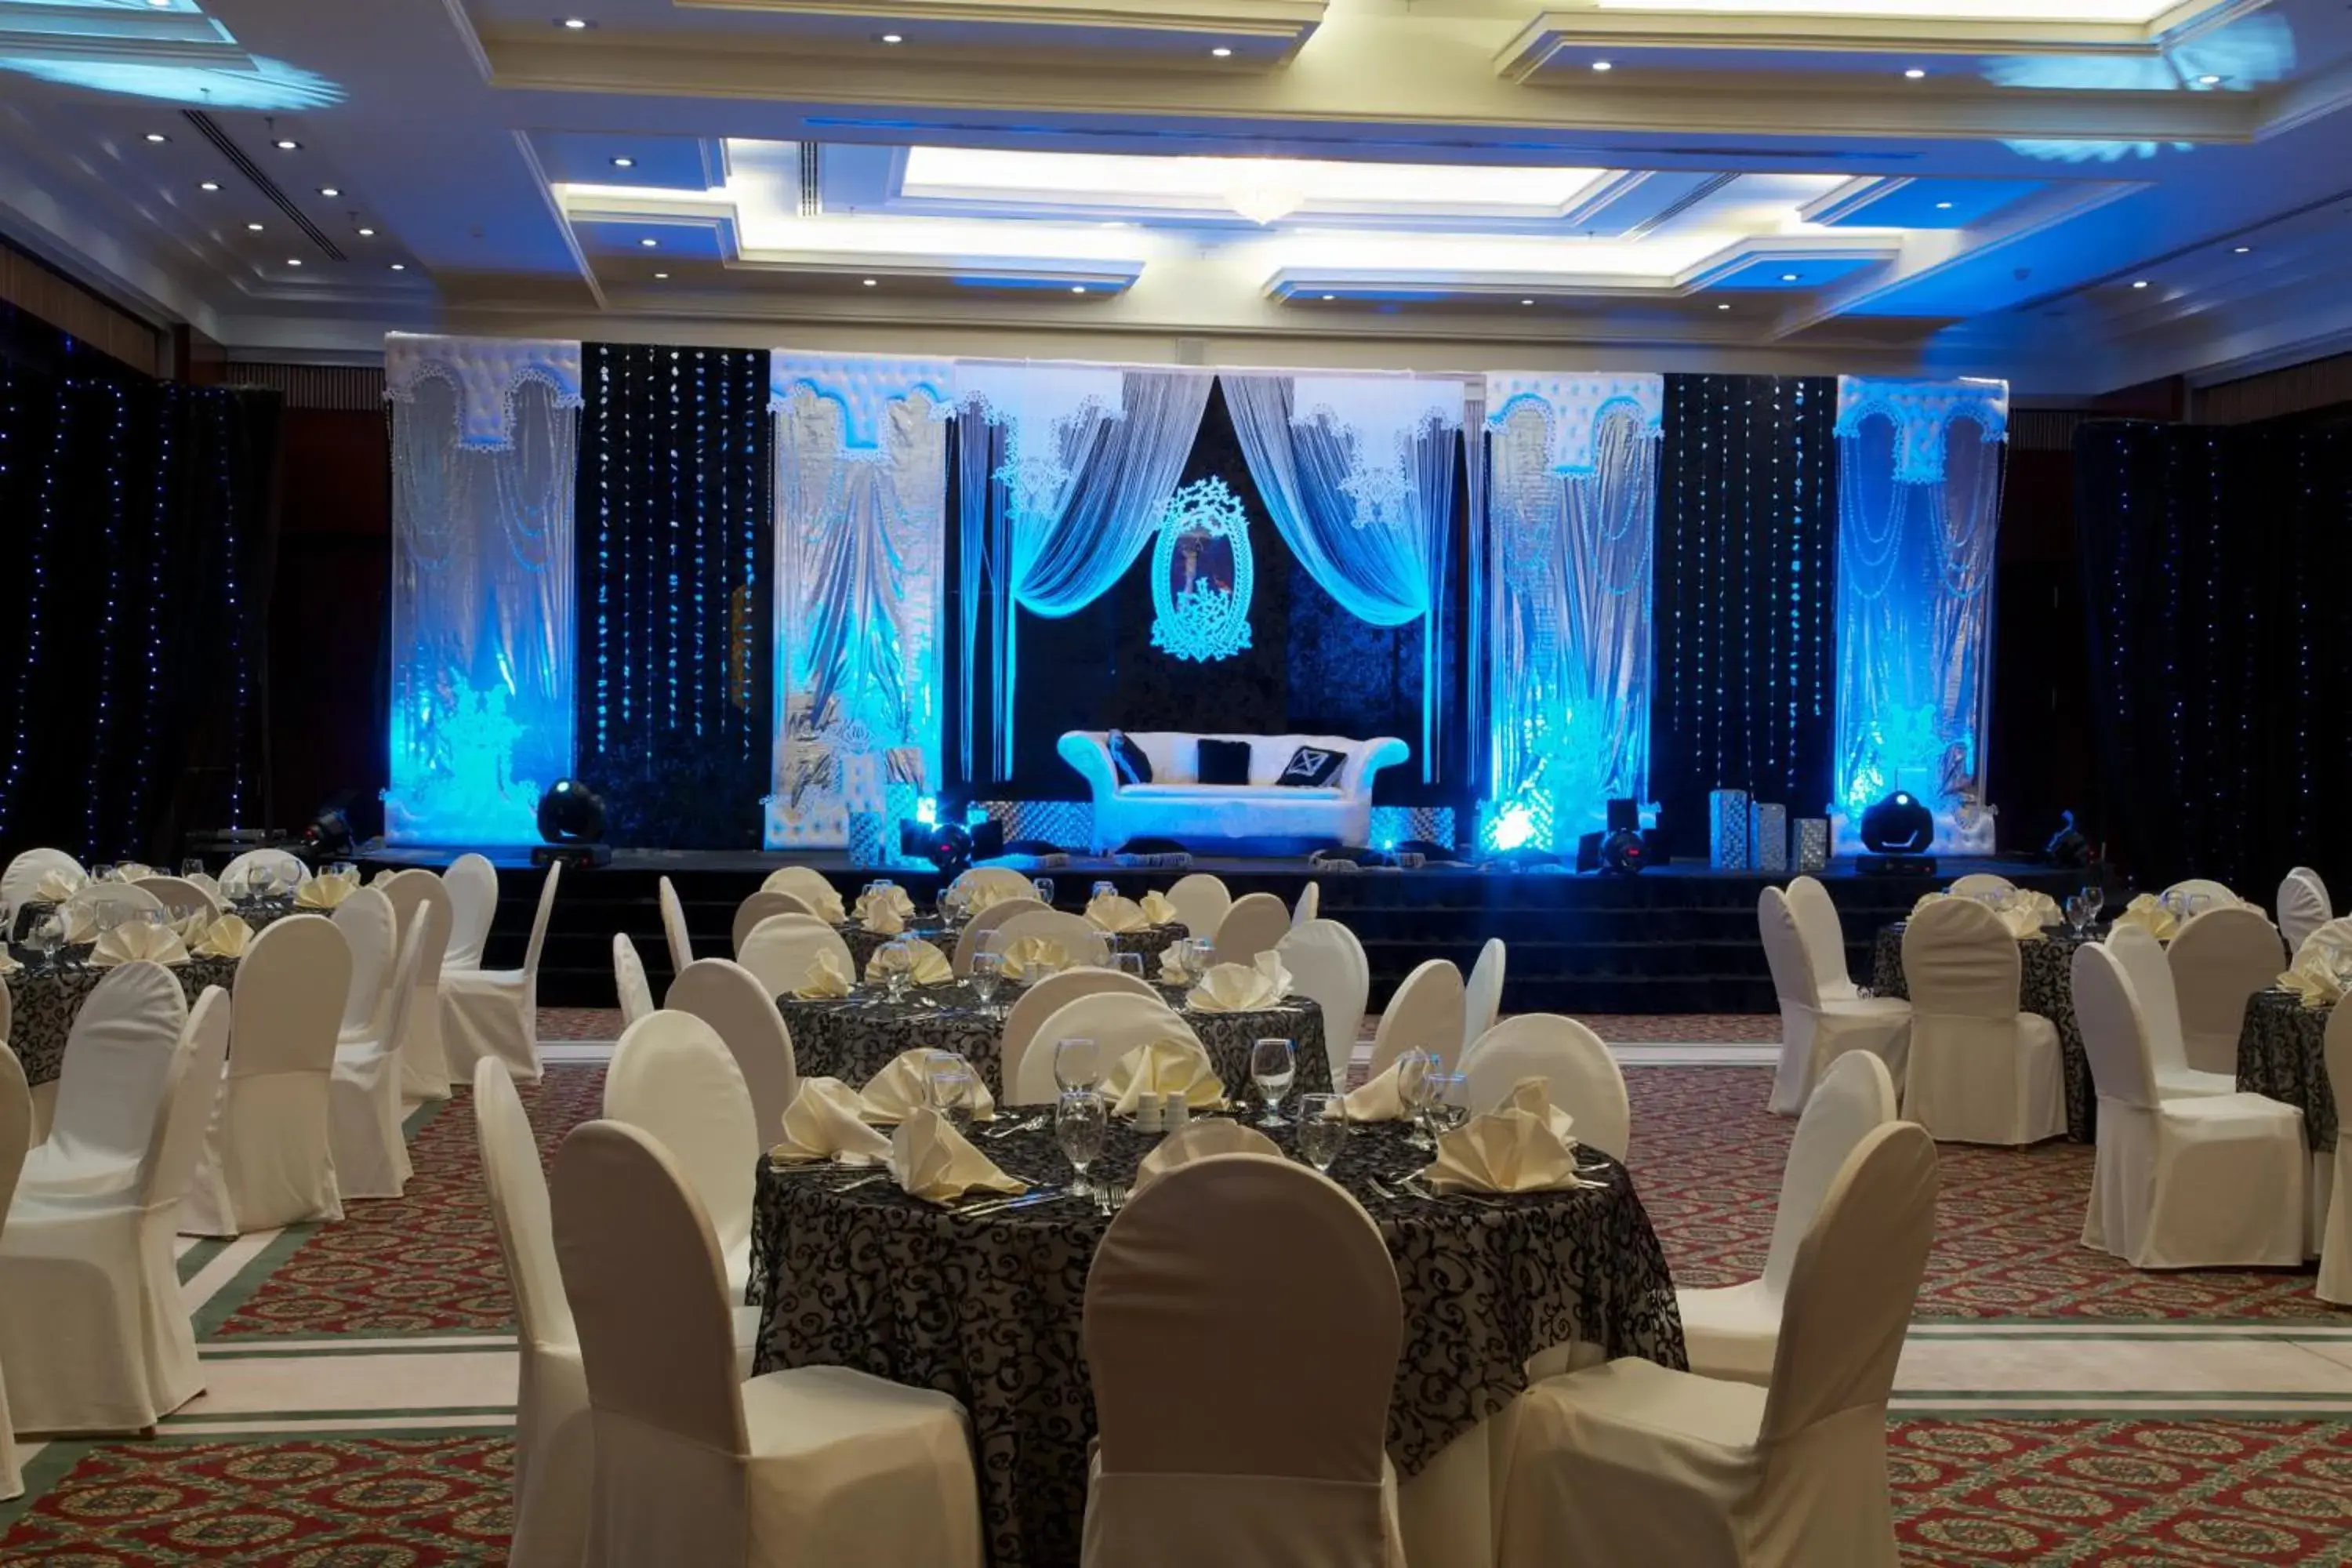 Banquet/Function facilities, Banquet Facilities in Concorde Fujairah Hotel